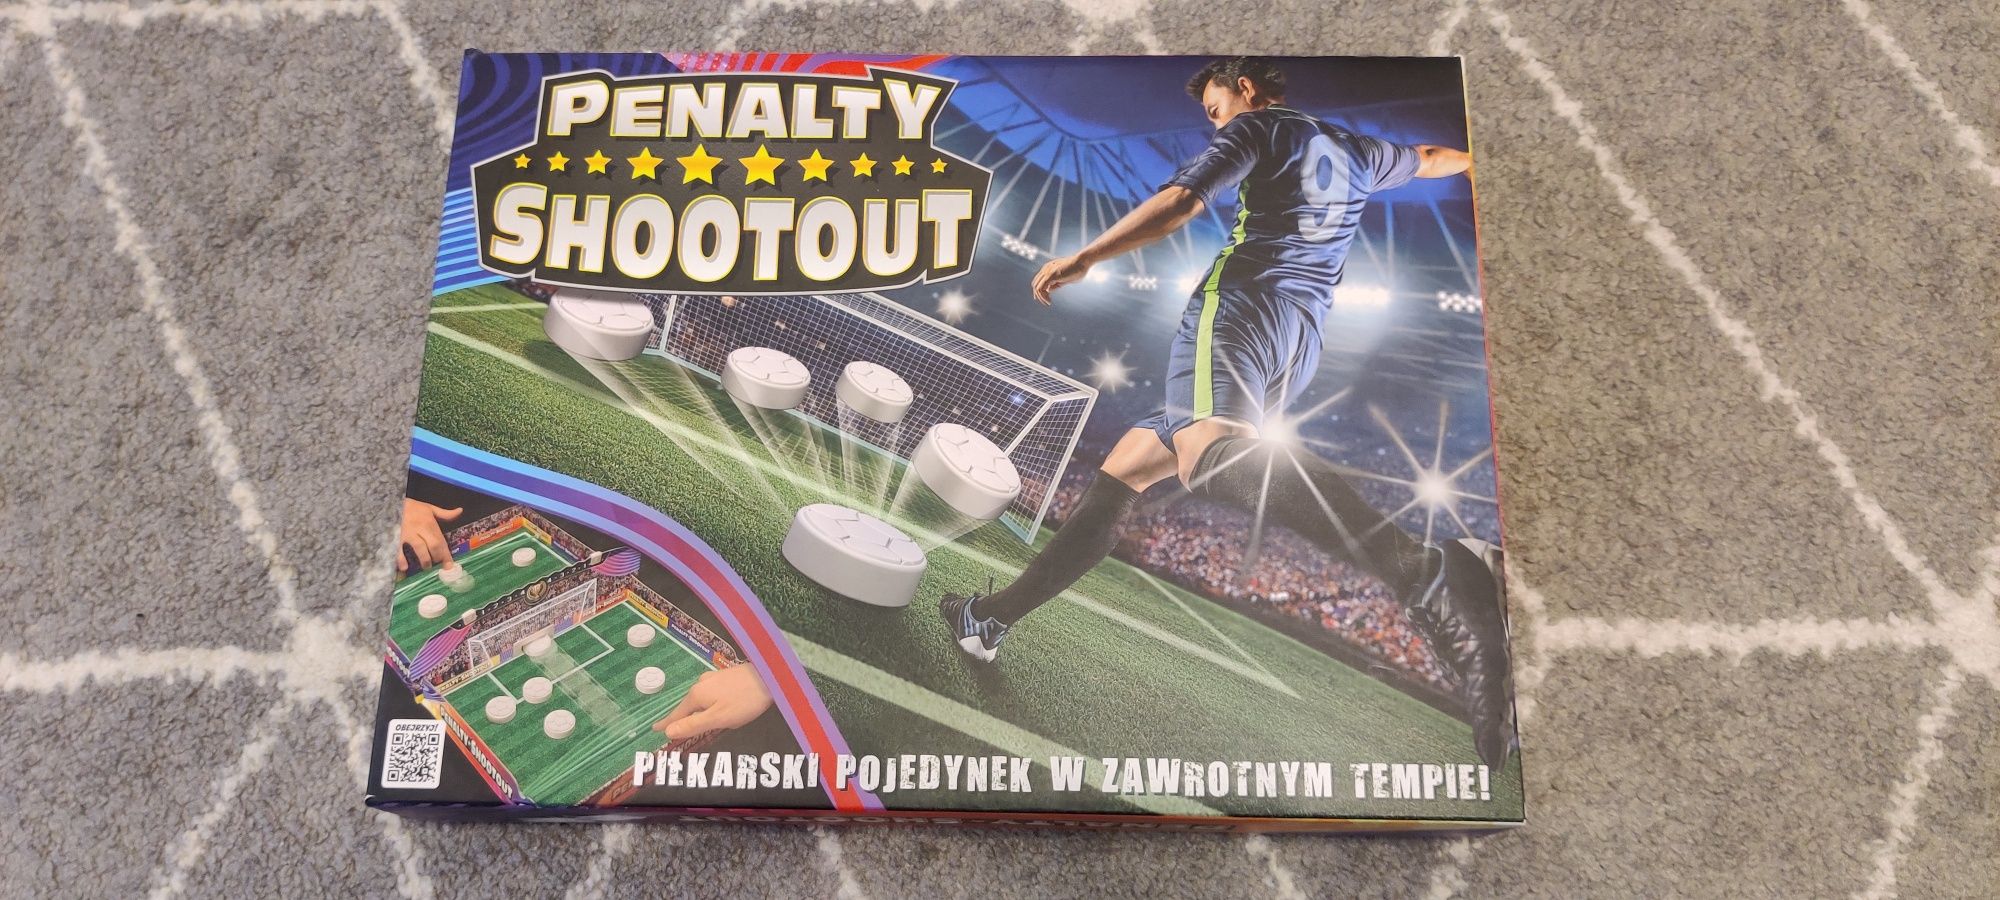 Piłkarska gra planszowa penalty Shootout